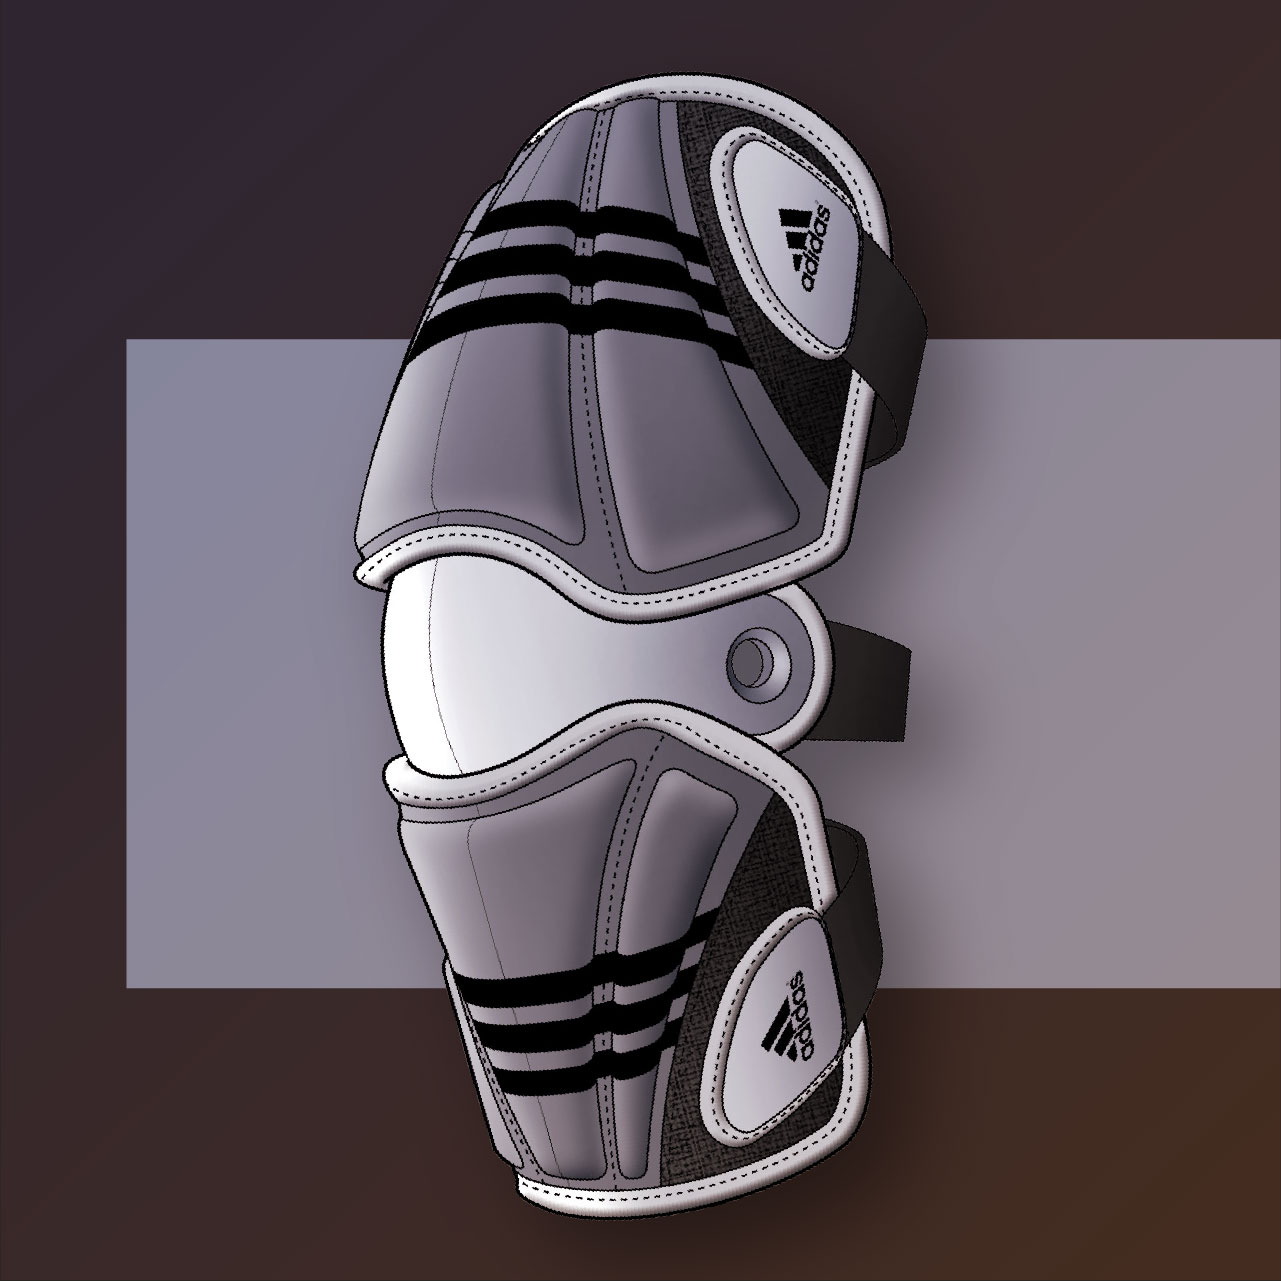 Adidas Lacrosse Gear | Knee Pad Rendering